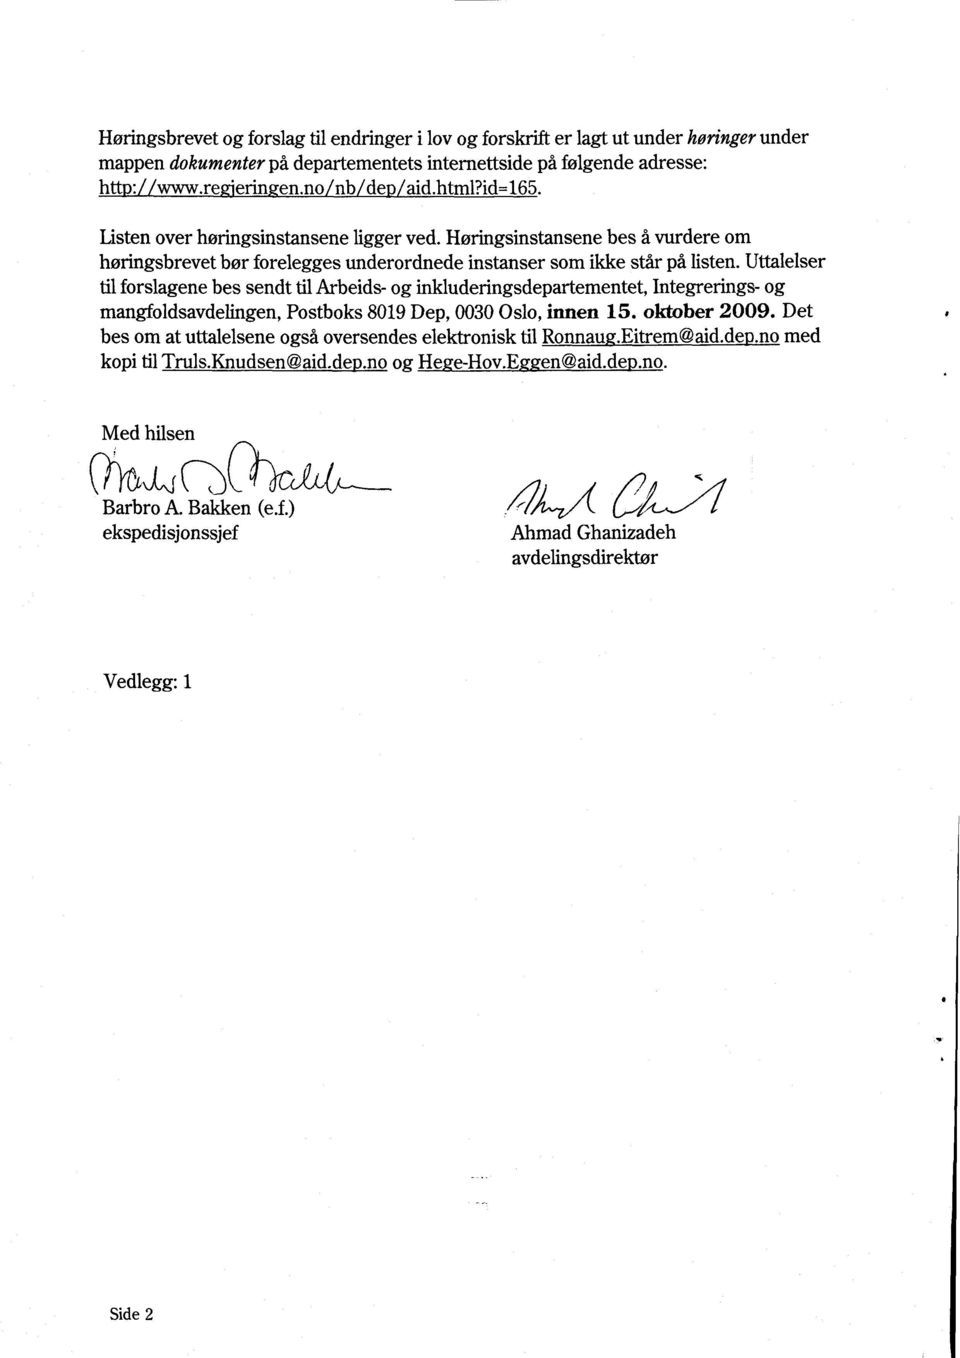 Uttalelser til forslagene bes sendt til Arbeids- og inkluderingsdepartementet, Integrerings- og mangfoldsavdelingen, Postboks 8019 Dep, 0030 Oslo, innen 15. oktober 2009.